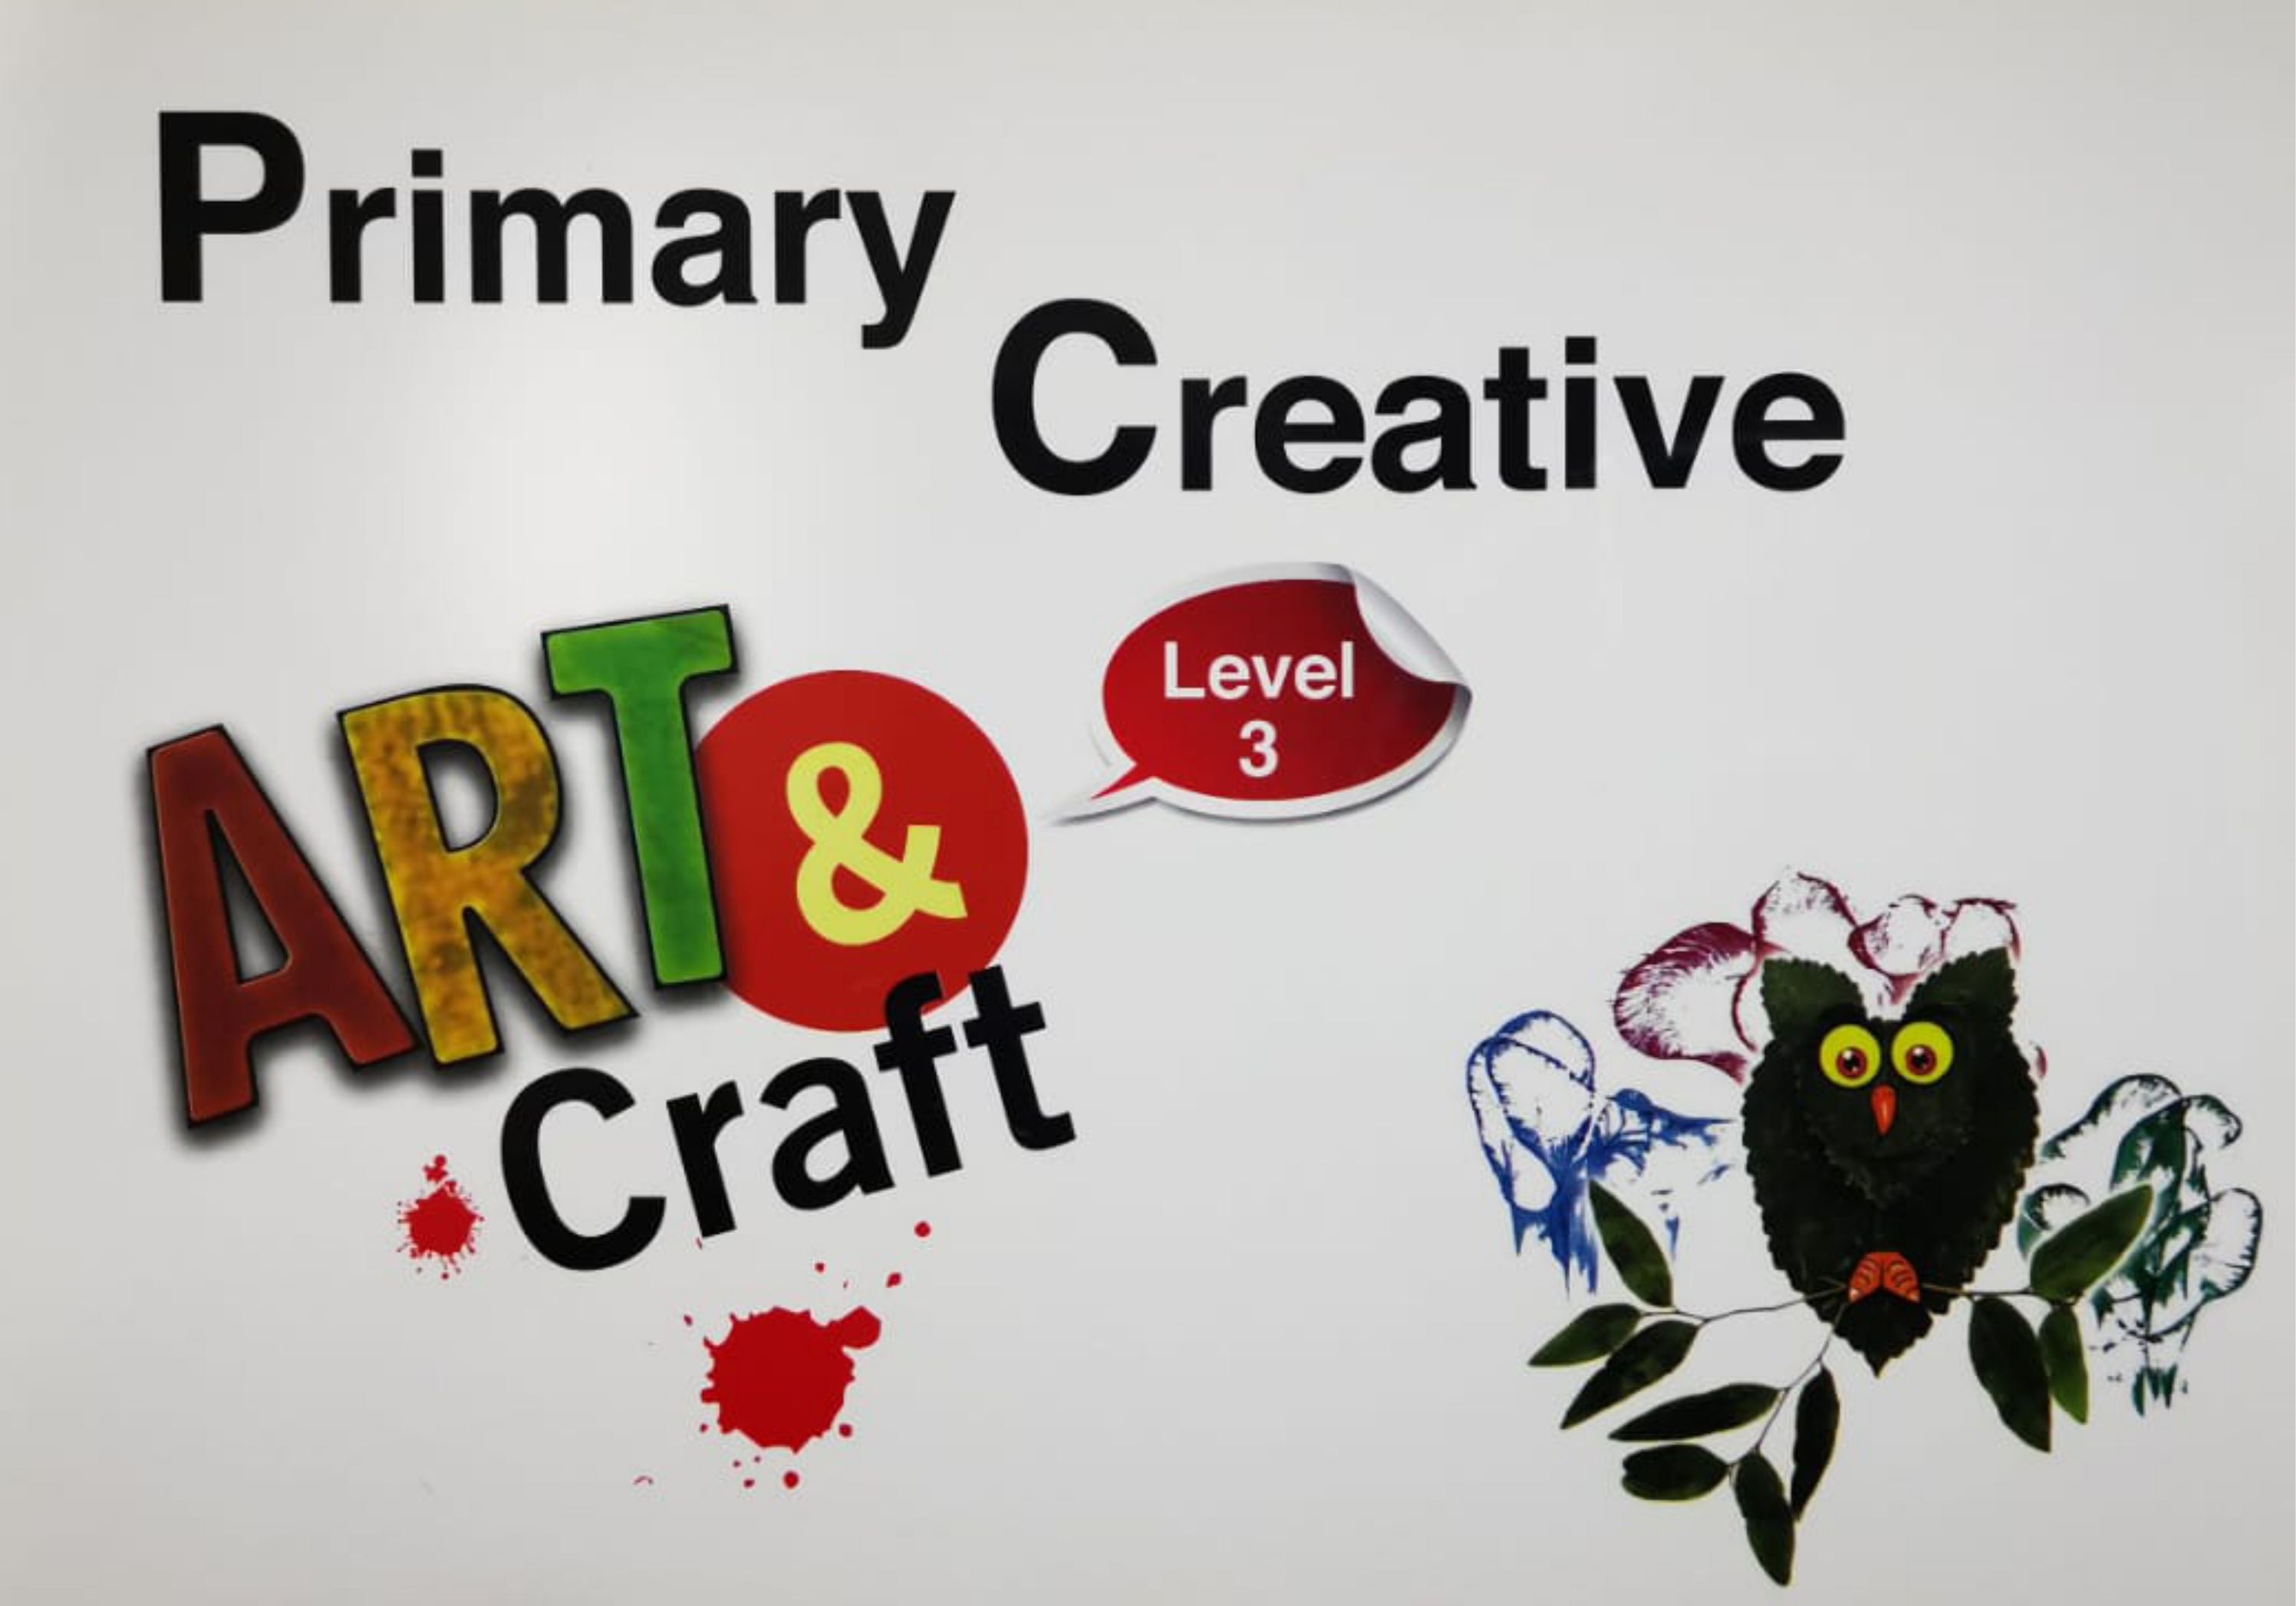 Primary Creative - Level 3